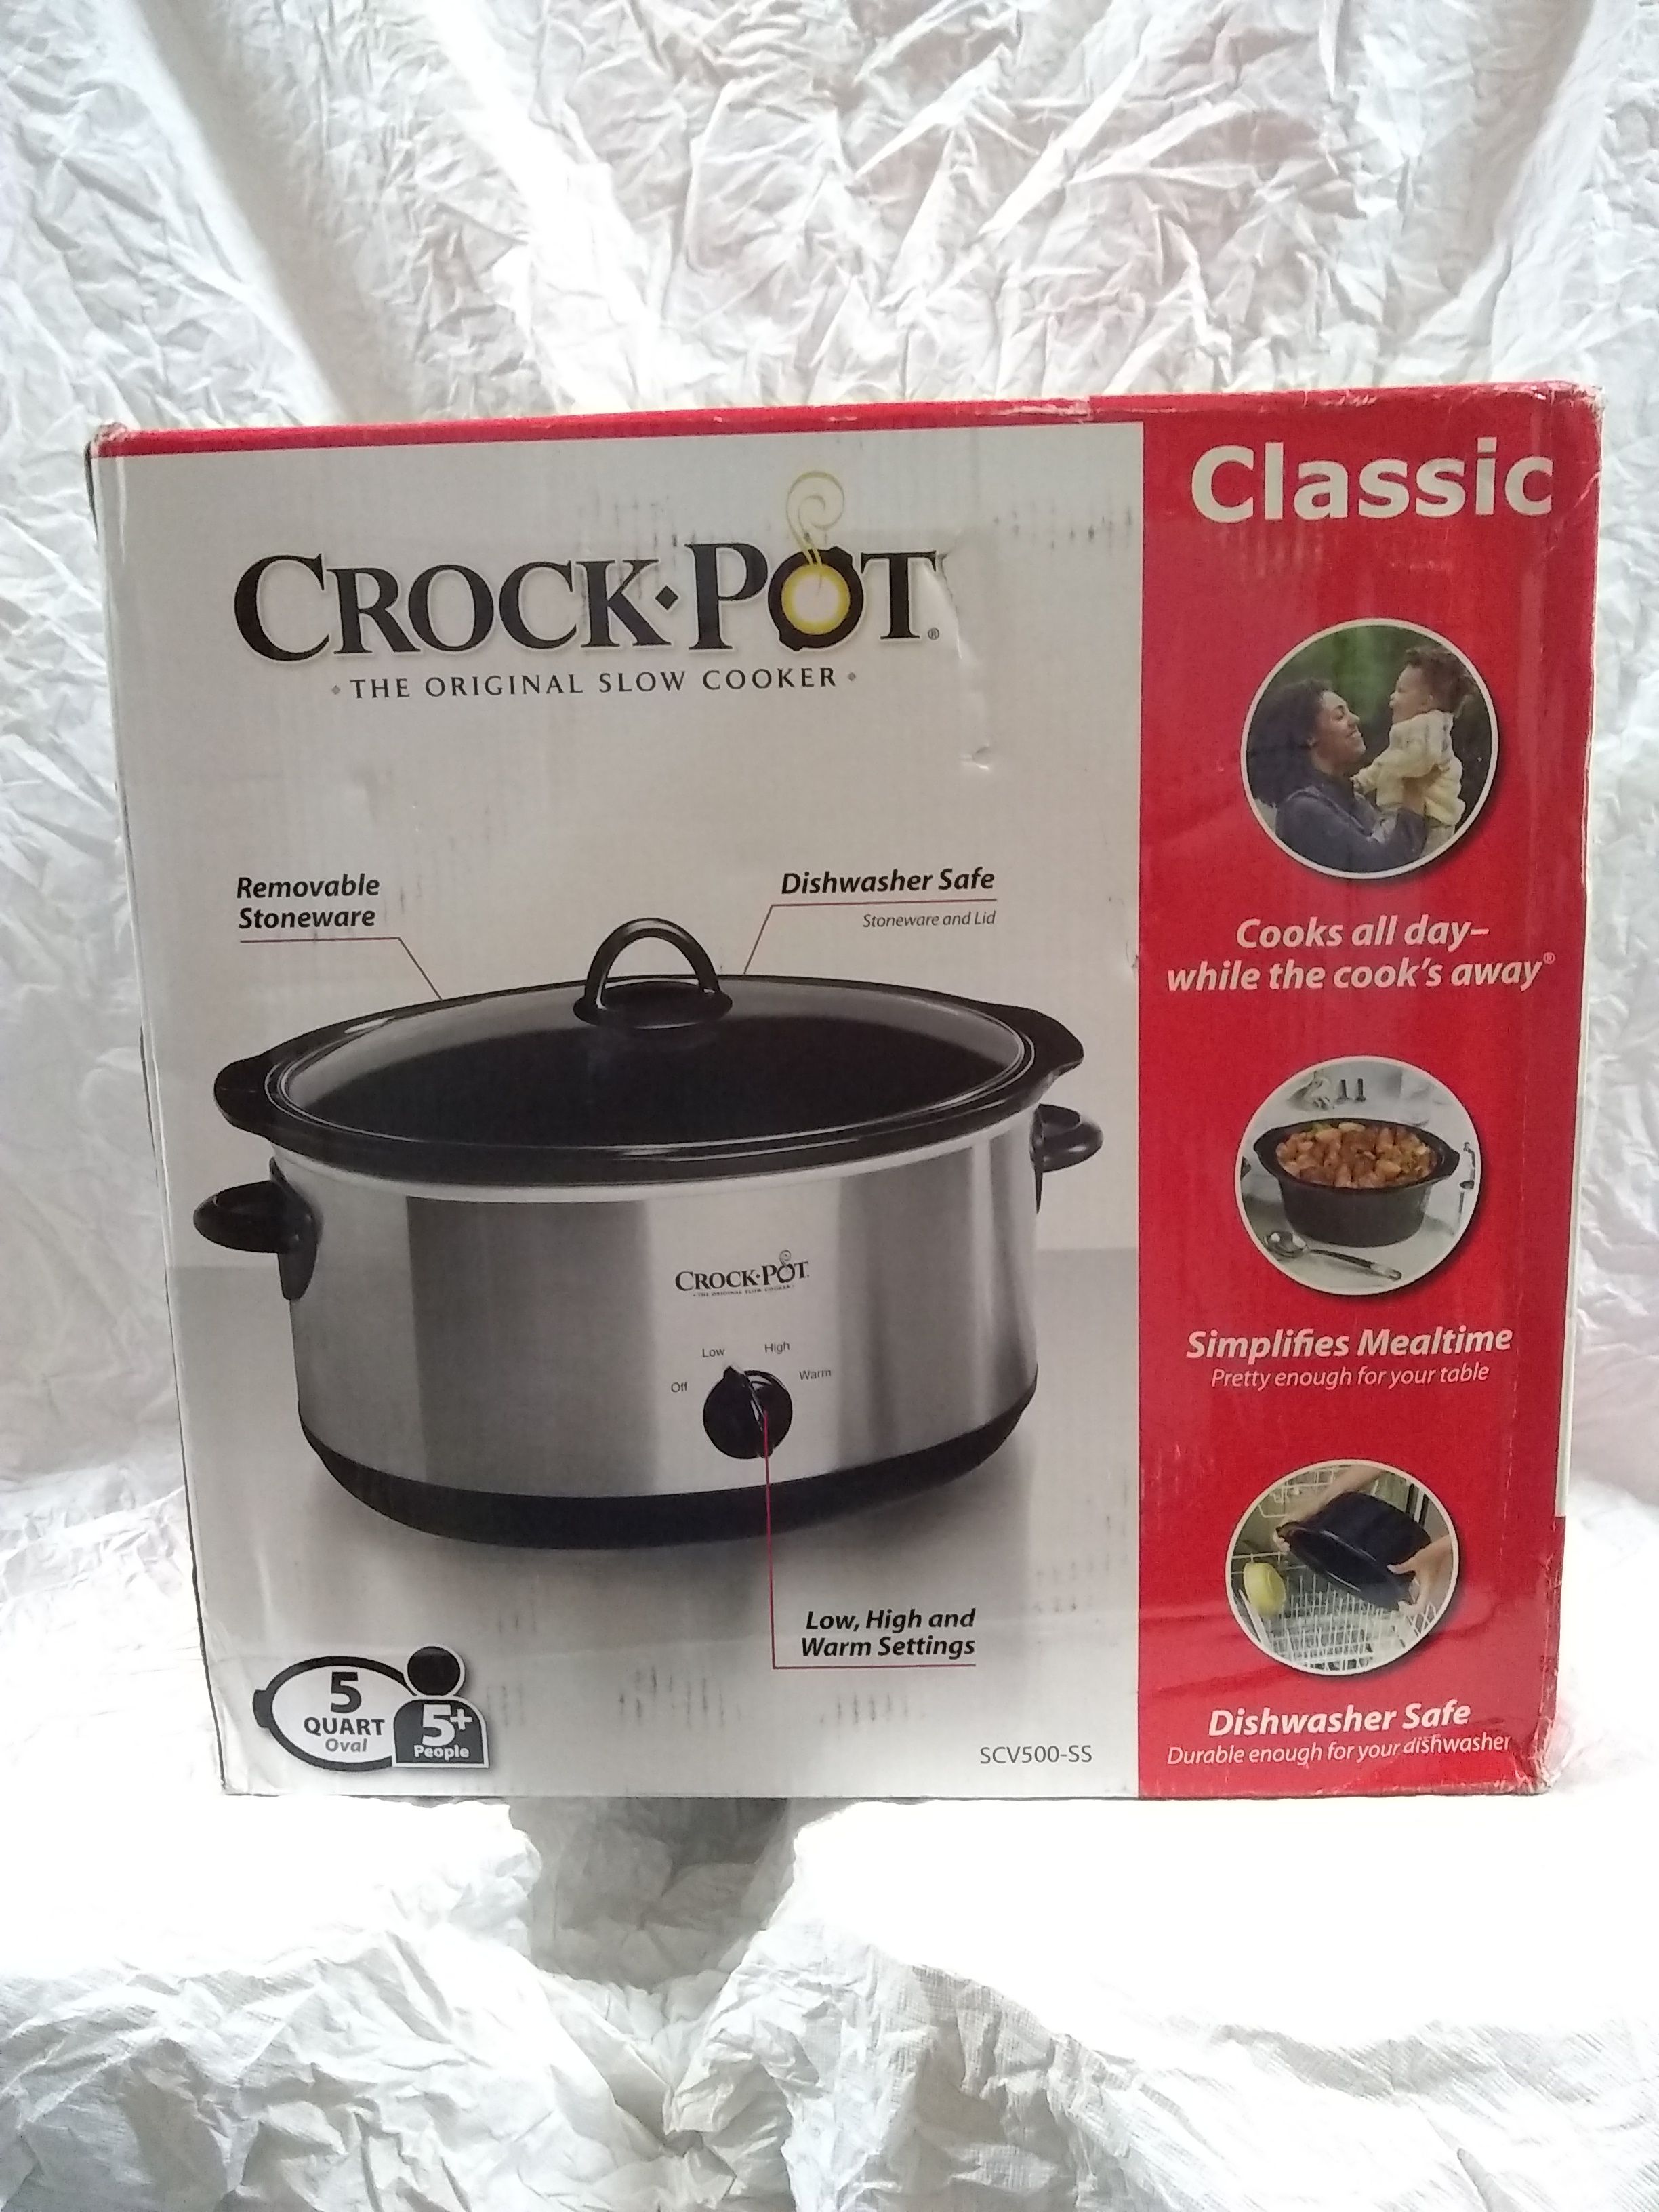 Crock Pot Slow Cooker the Original 5qt 3 heat setting